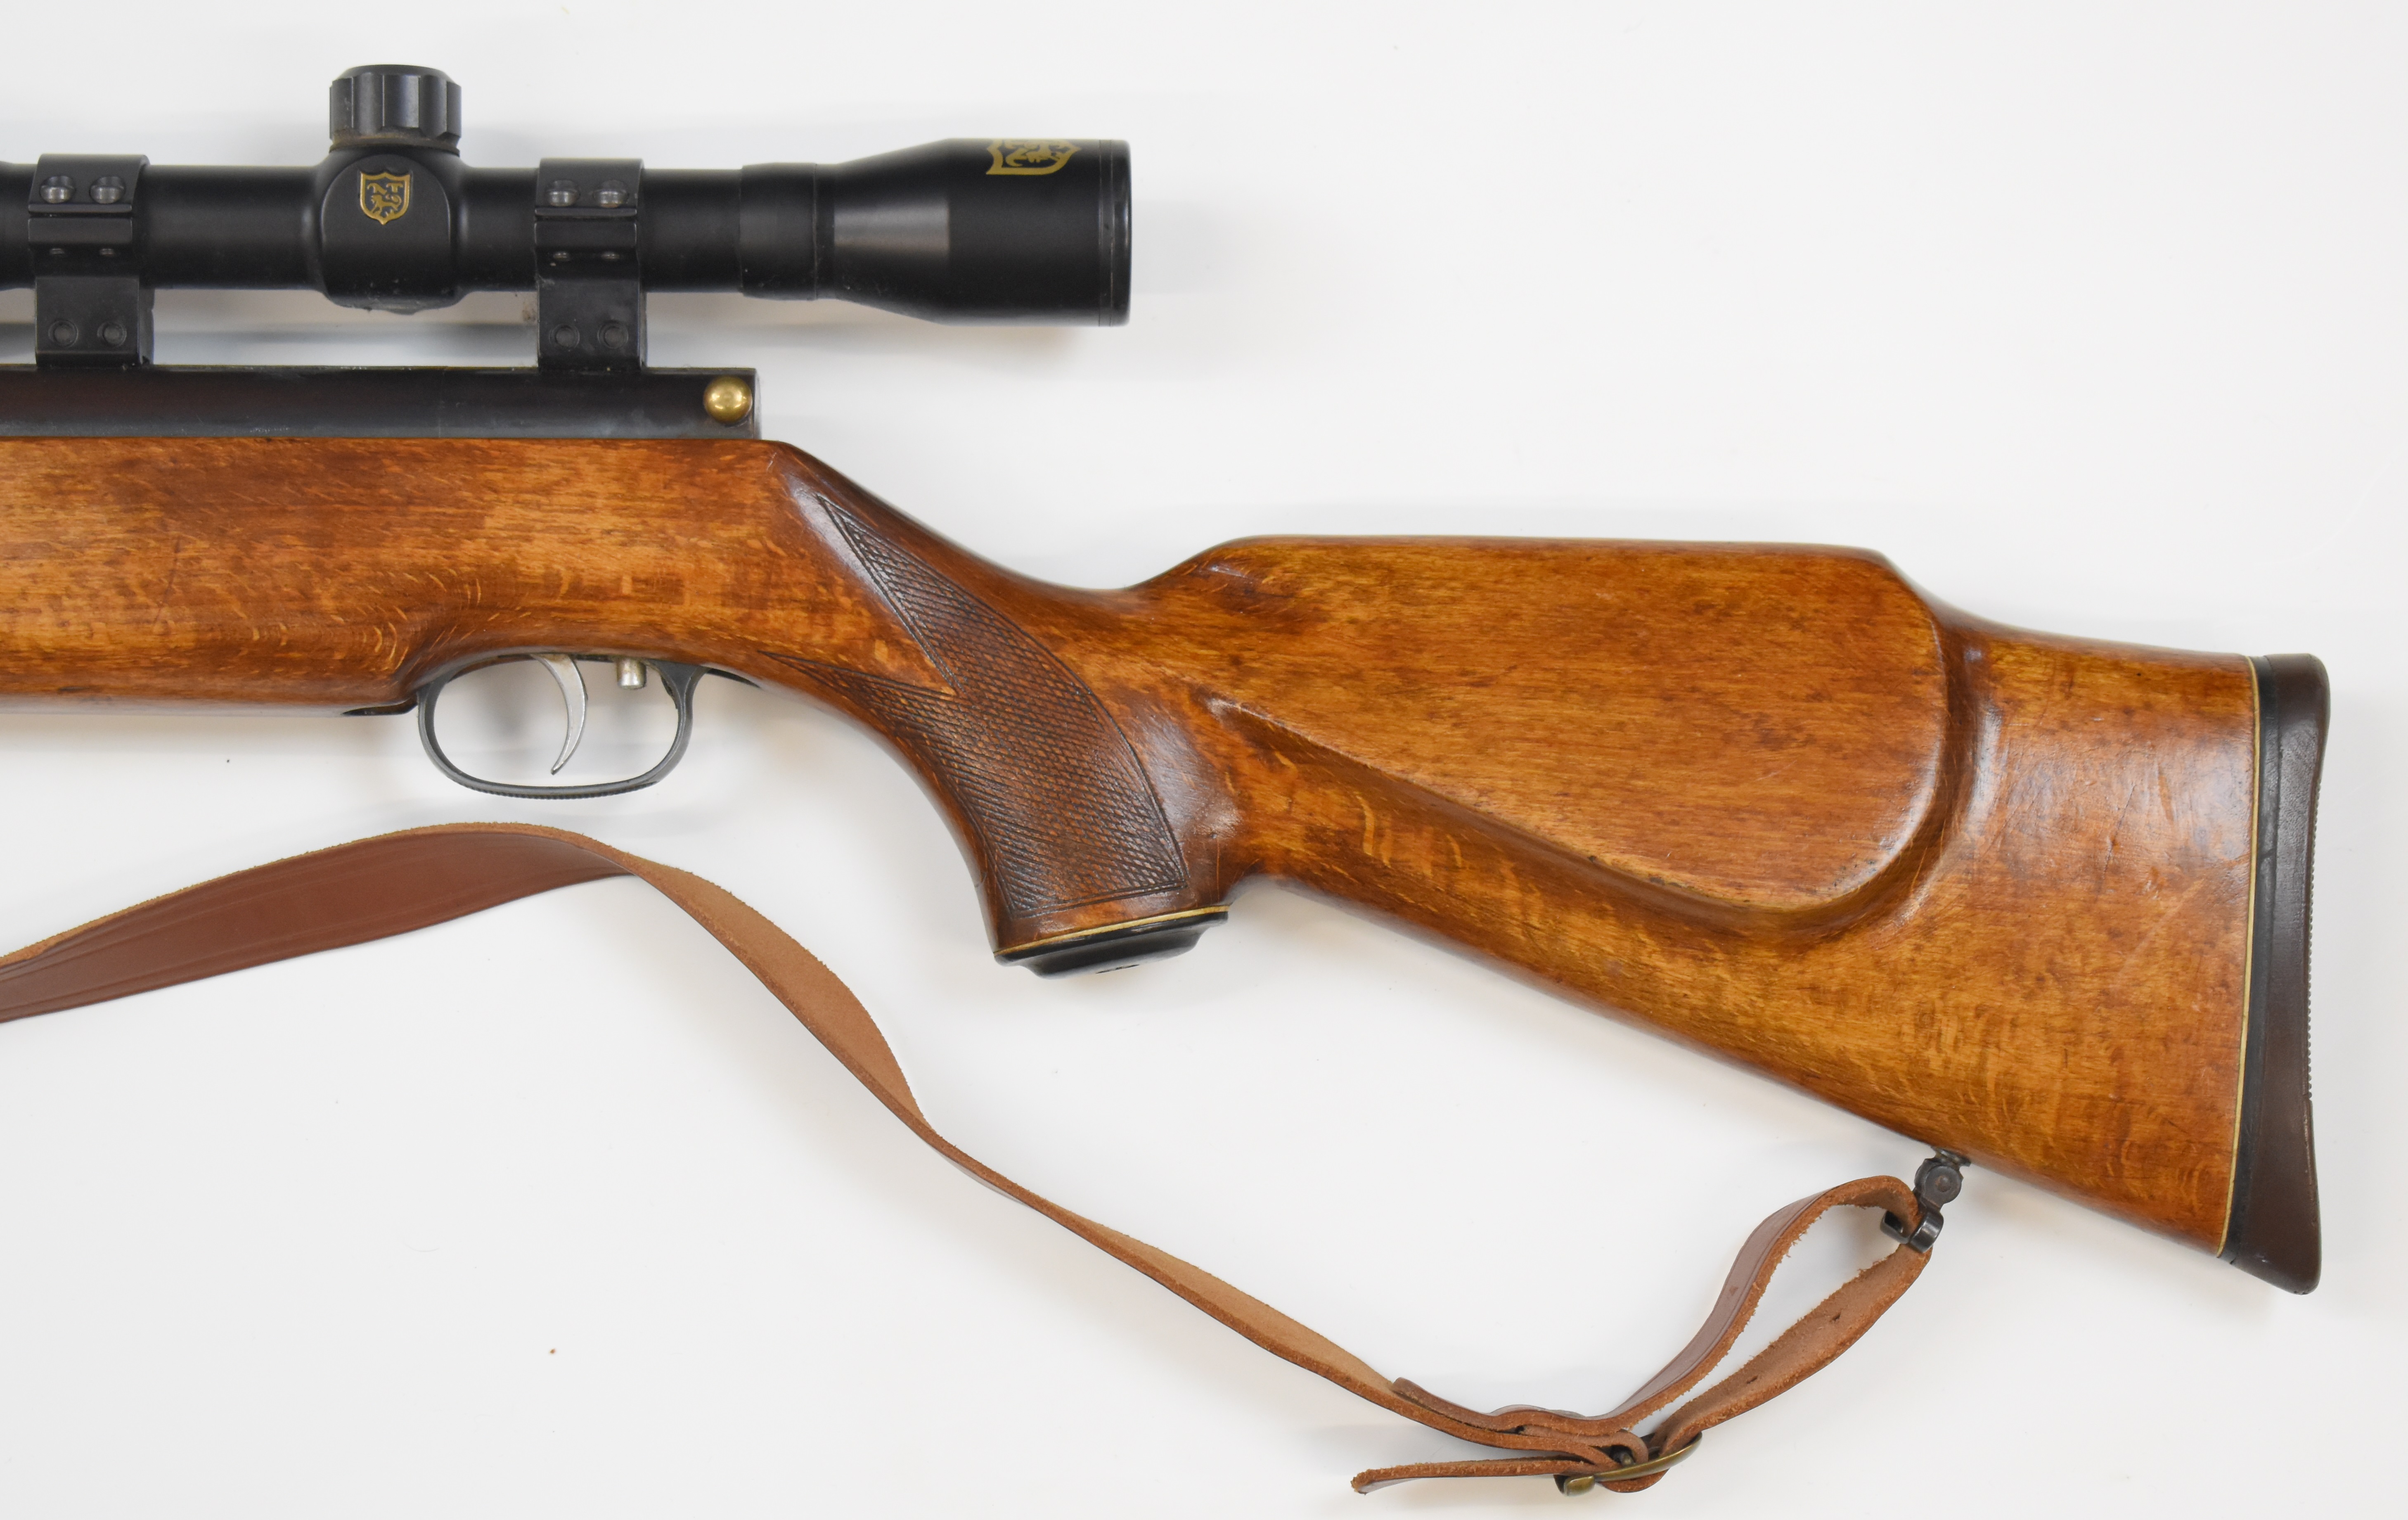 Weirauch HW77 .22 underlever air rifle with chequered semi-pistol grip, raised cheek piece, - Image 7 of 9